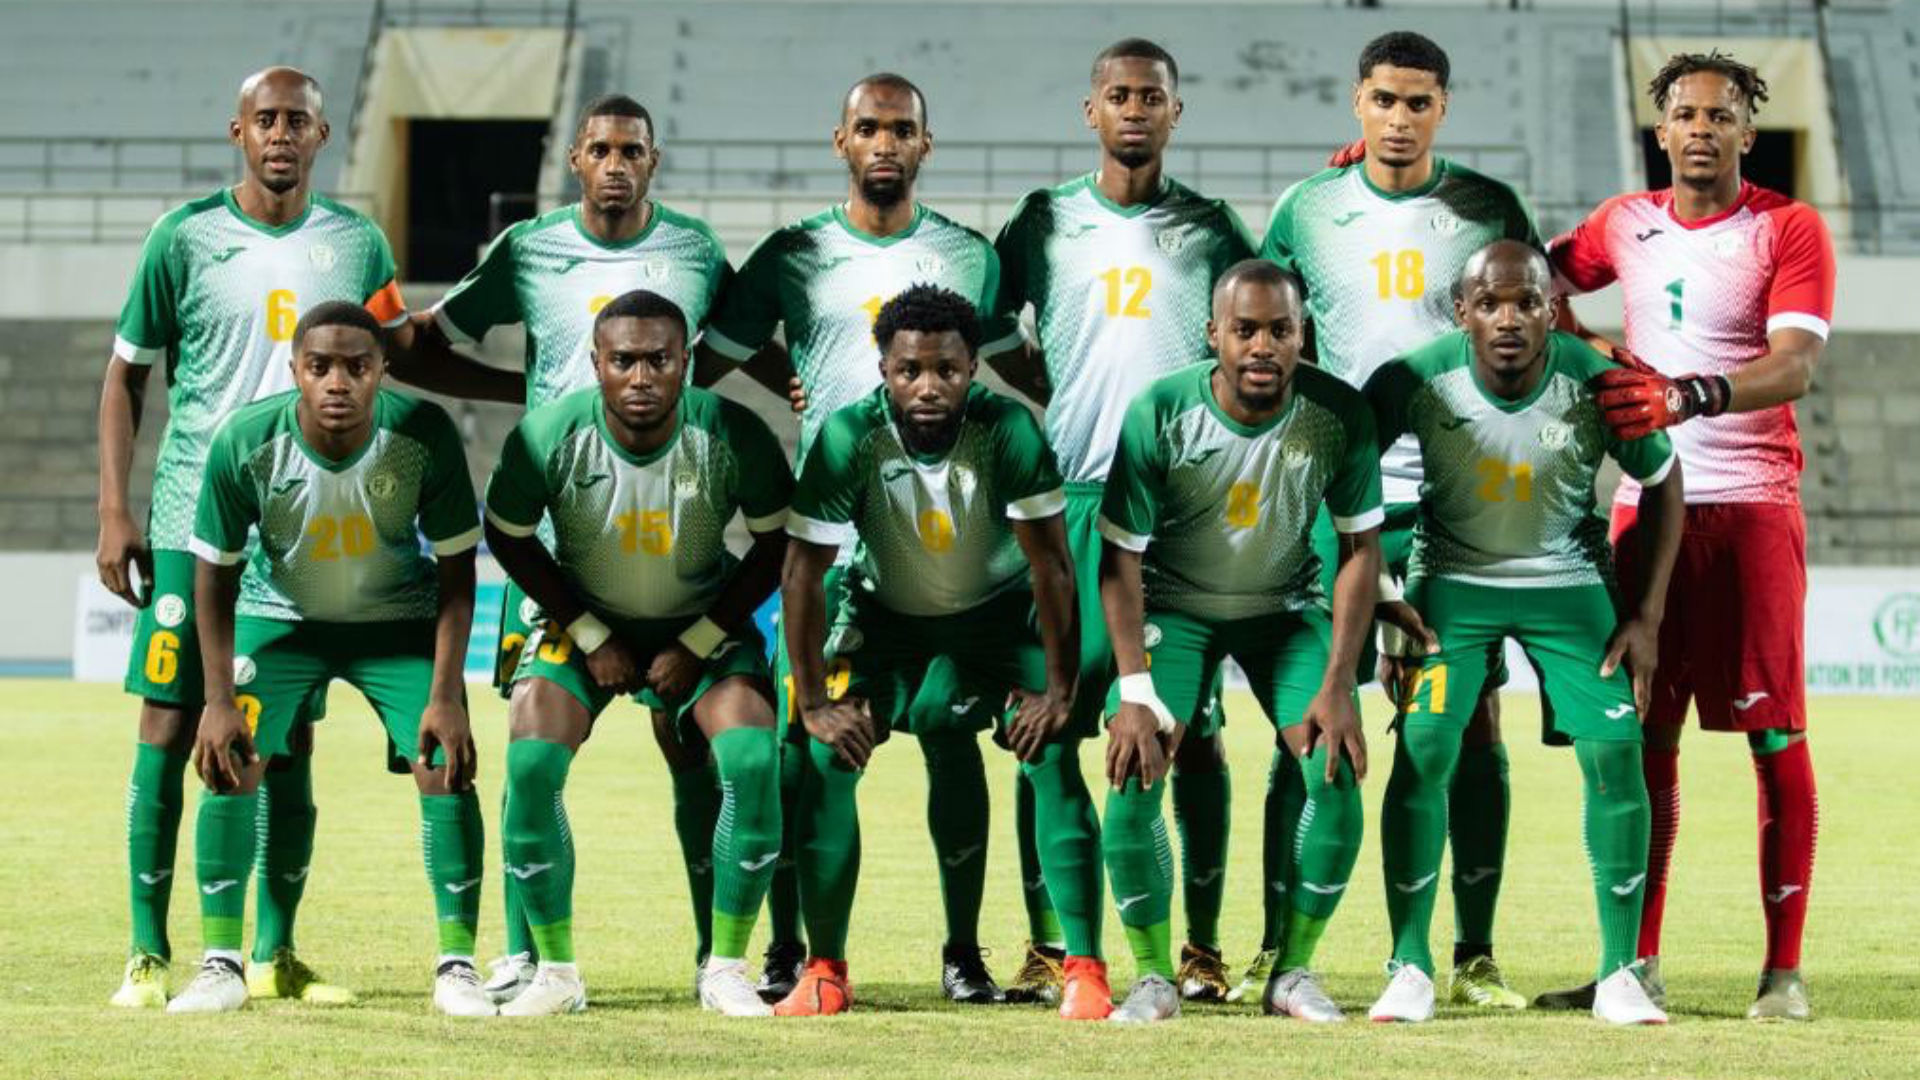 Comoros, VCK Cúp châu Phi: National team của Comoros sẽ tham gia VCK Cúp châu Phi lần đầu tiên. Điều đó tạo nên sự thú vị và hứng thú cho những người yêu mến bóng đá. Hãy cùng tìm hiểu về sự chuẩn bị của đội bóng nhỏ bé này và cổ vũ cho họ trong những trận đấu sắp tới.